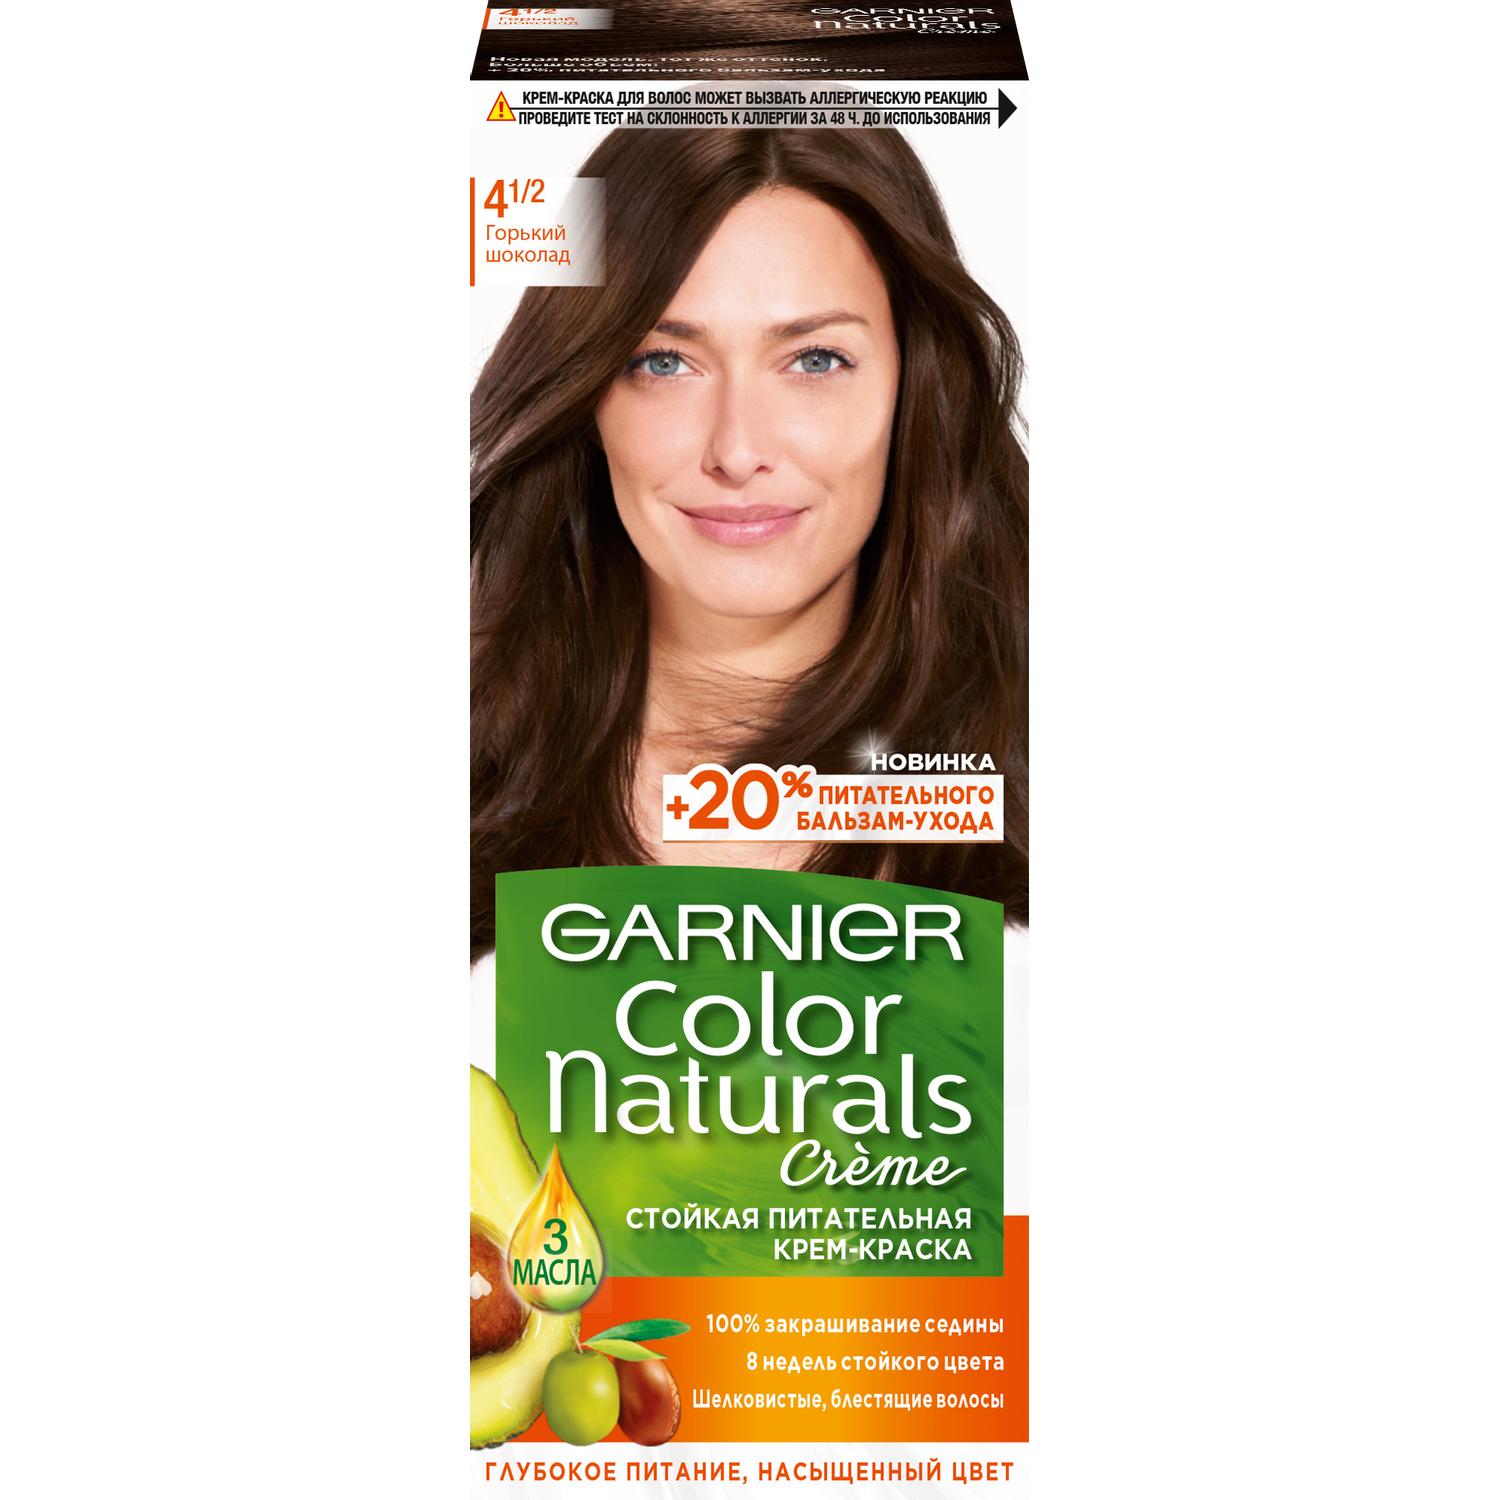 Крем-краска для волос Garnier Color Naturals 4.1/2 Горький Шоколад 110 мл краска для бровей и ресниц тон горький шоколад 5 5 г